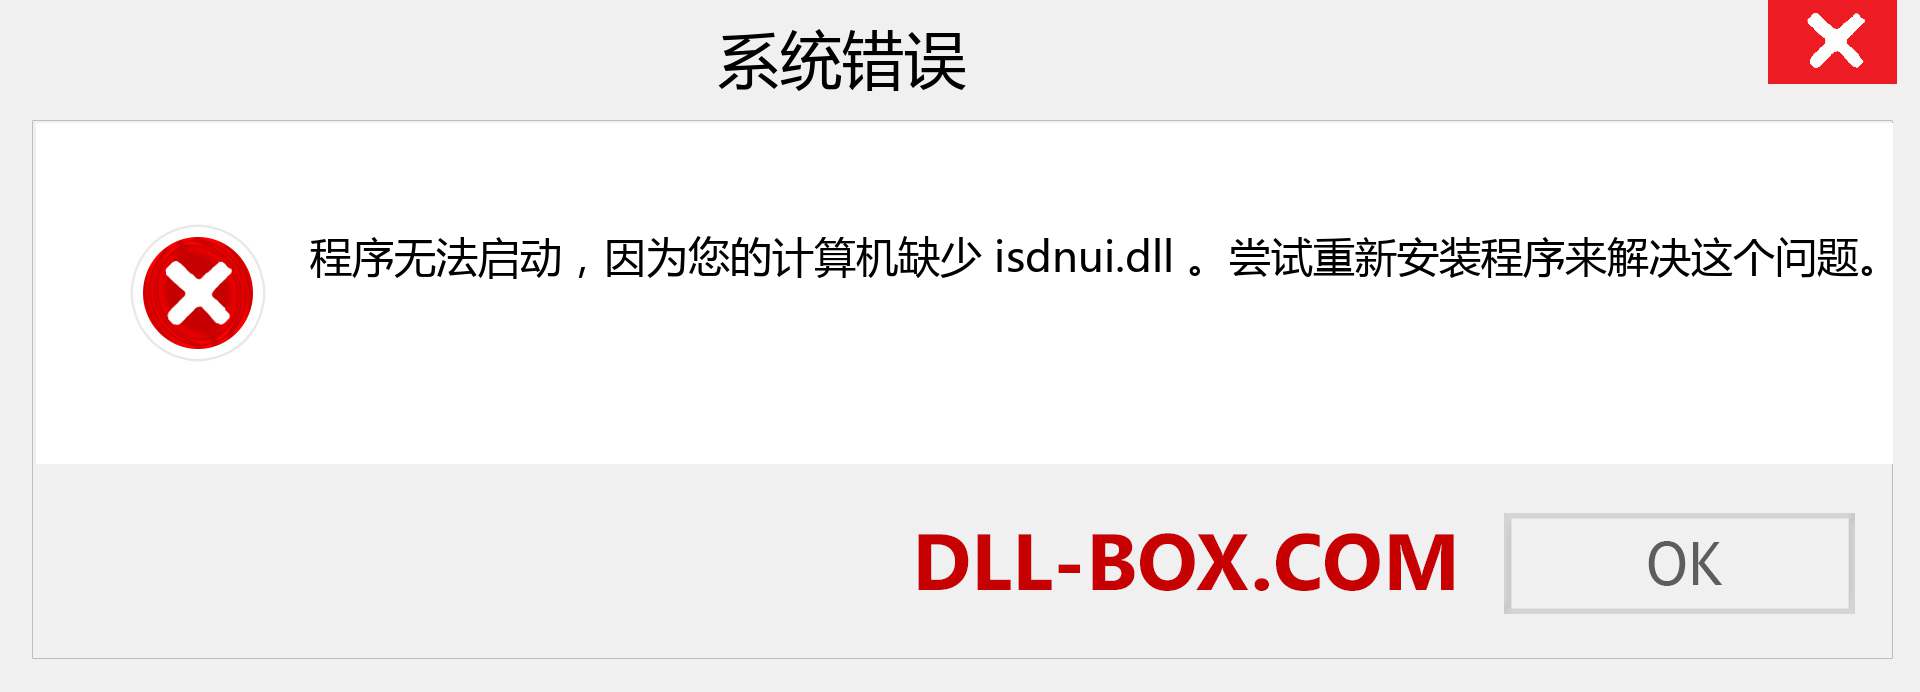 isdnui.dll 文件丢失？。 适用于 Windows 7、8、10 的下载 - 修复 Windows、照片、图像上的 isdnui dll 丢失错误